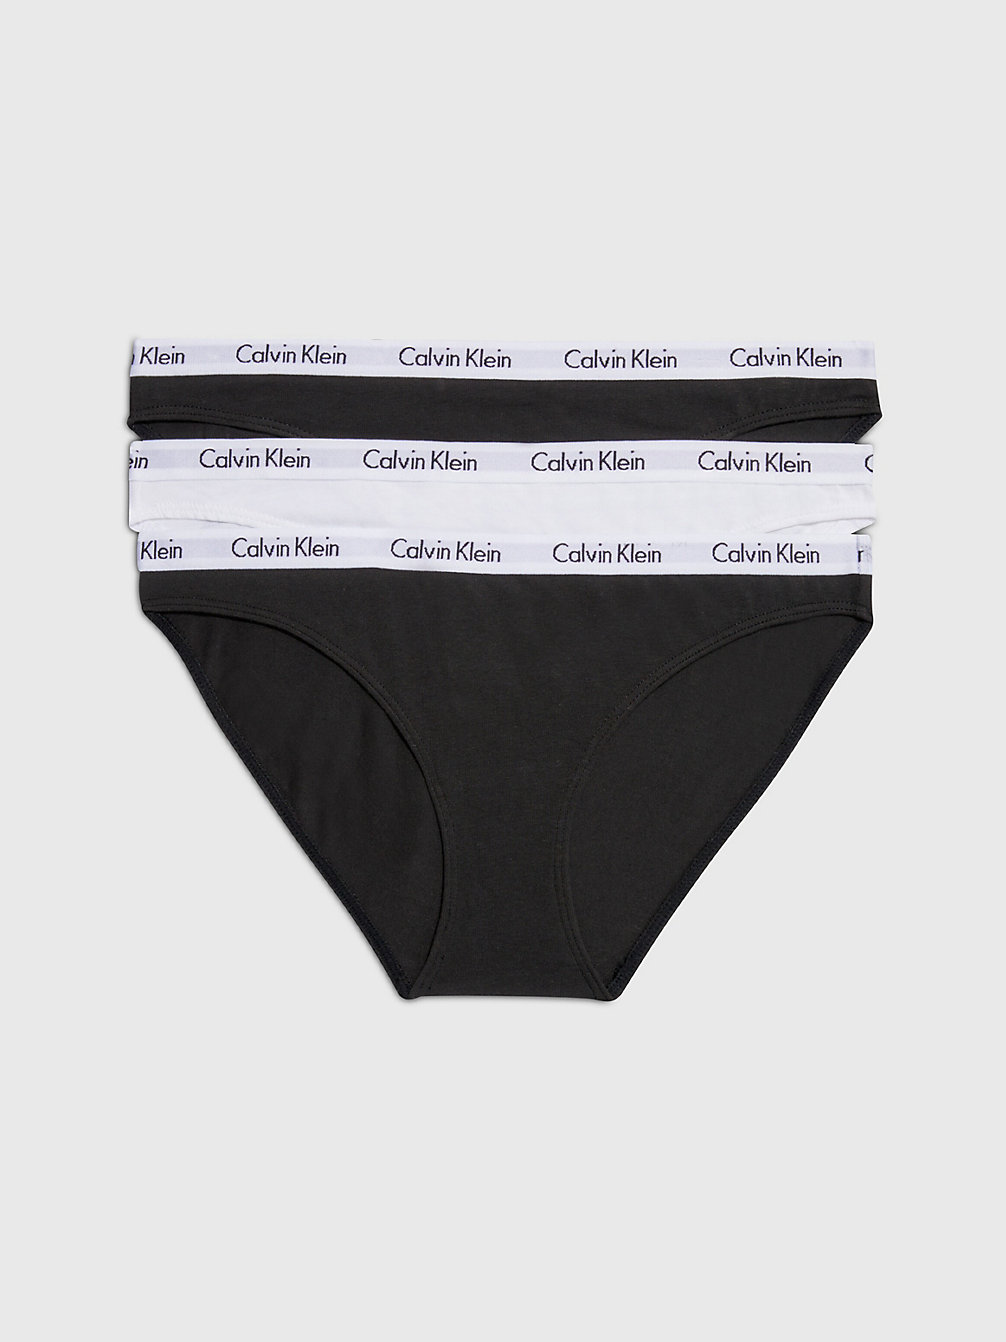 BLACK/WHITE/BLACK > 3-Pack Slips - Carousel > undefined dames - Calvin Klein